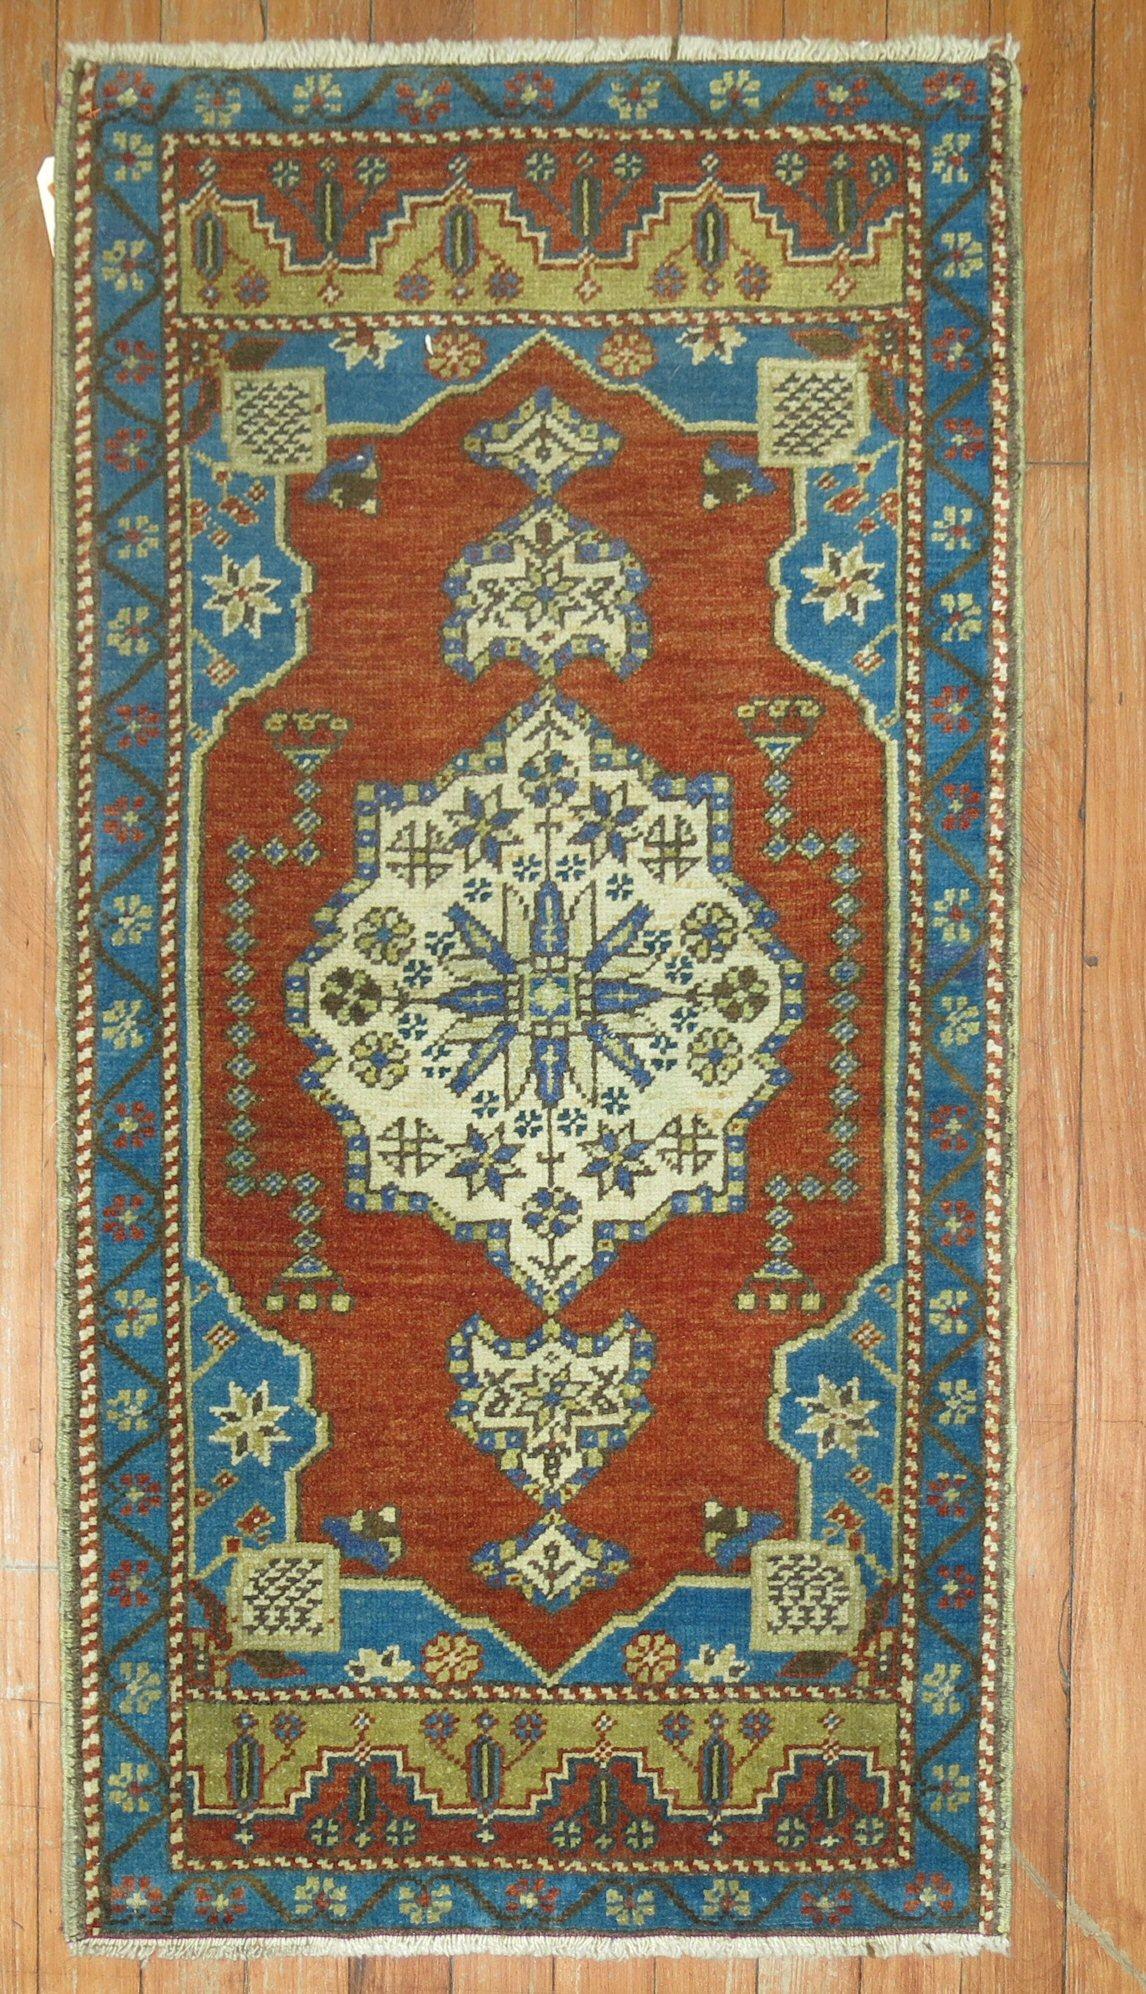 Mini tapis turc du début du 20e siècle

Mesures : 1'9'' x 3'3''.